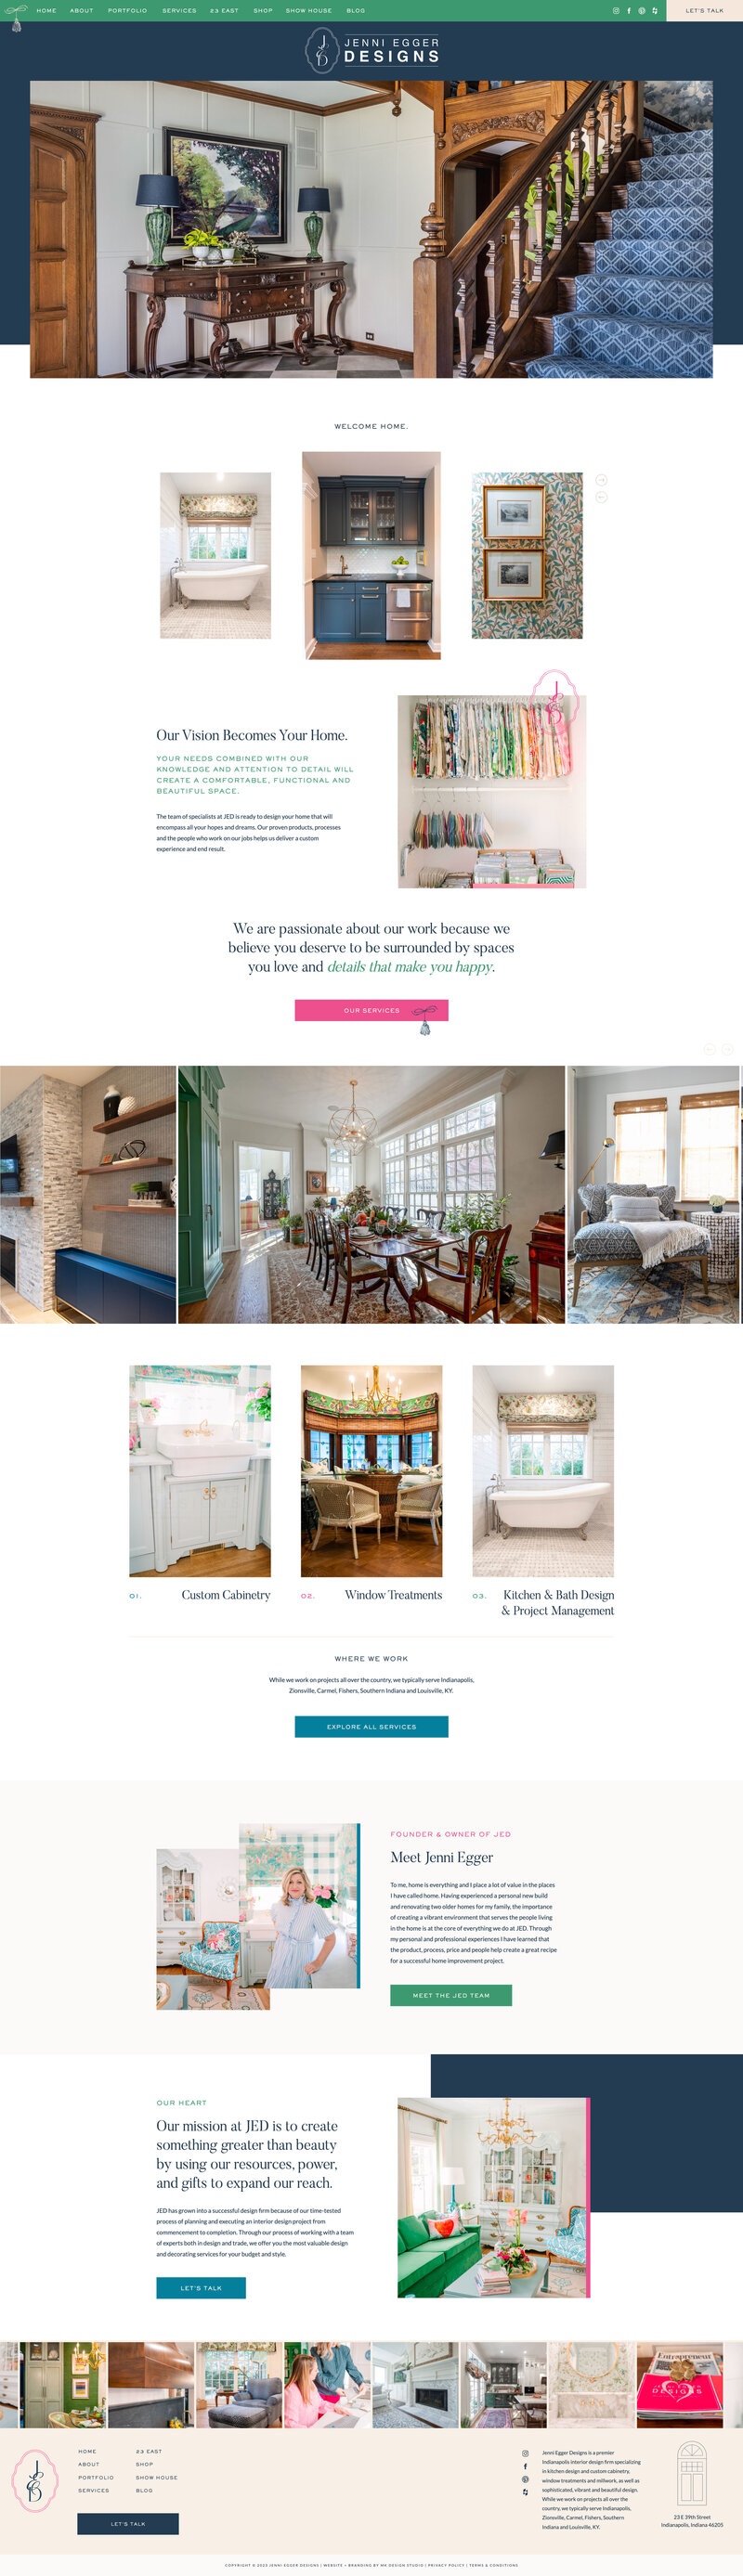 a screenshot of an interior design website